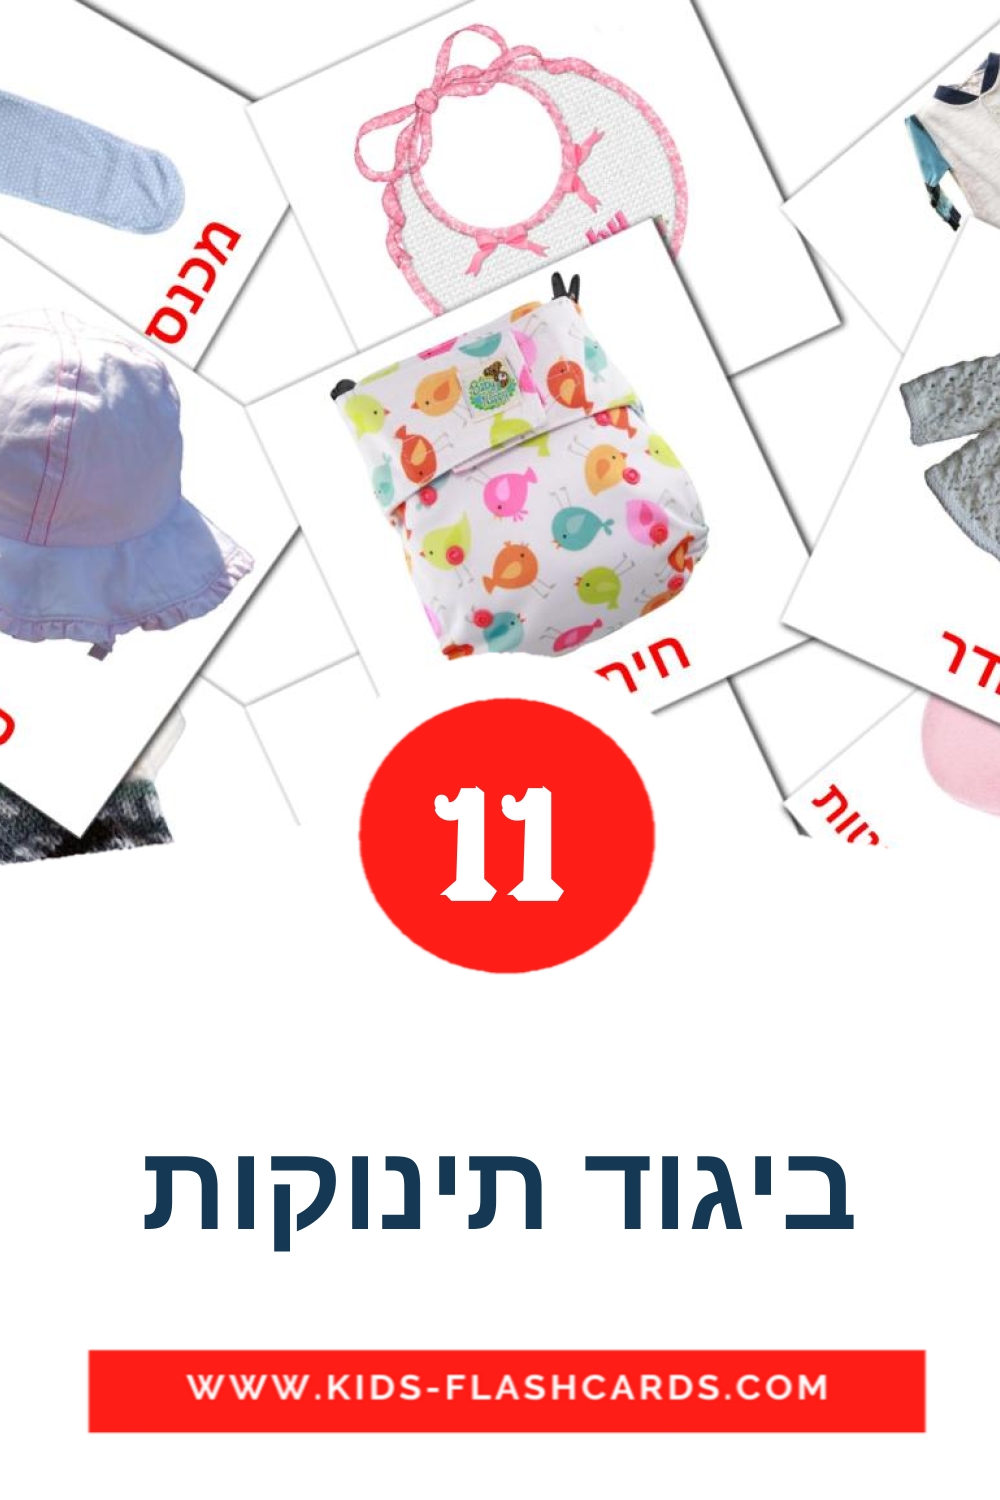 11 tarjetas didacticas de ביגוד תינוקות para el jardín de infancia en hebreo